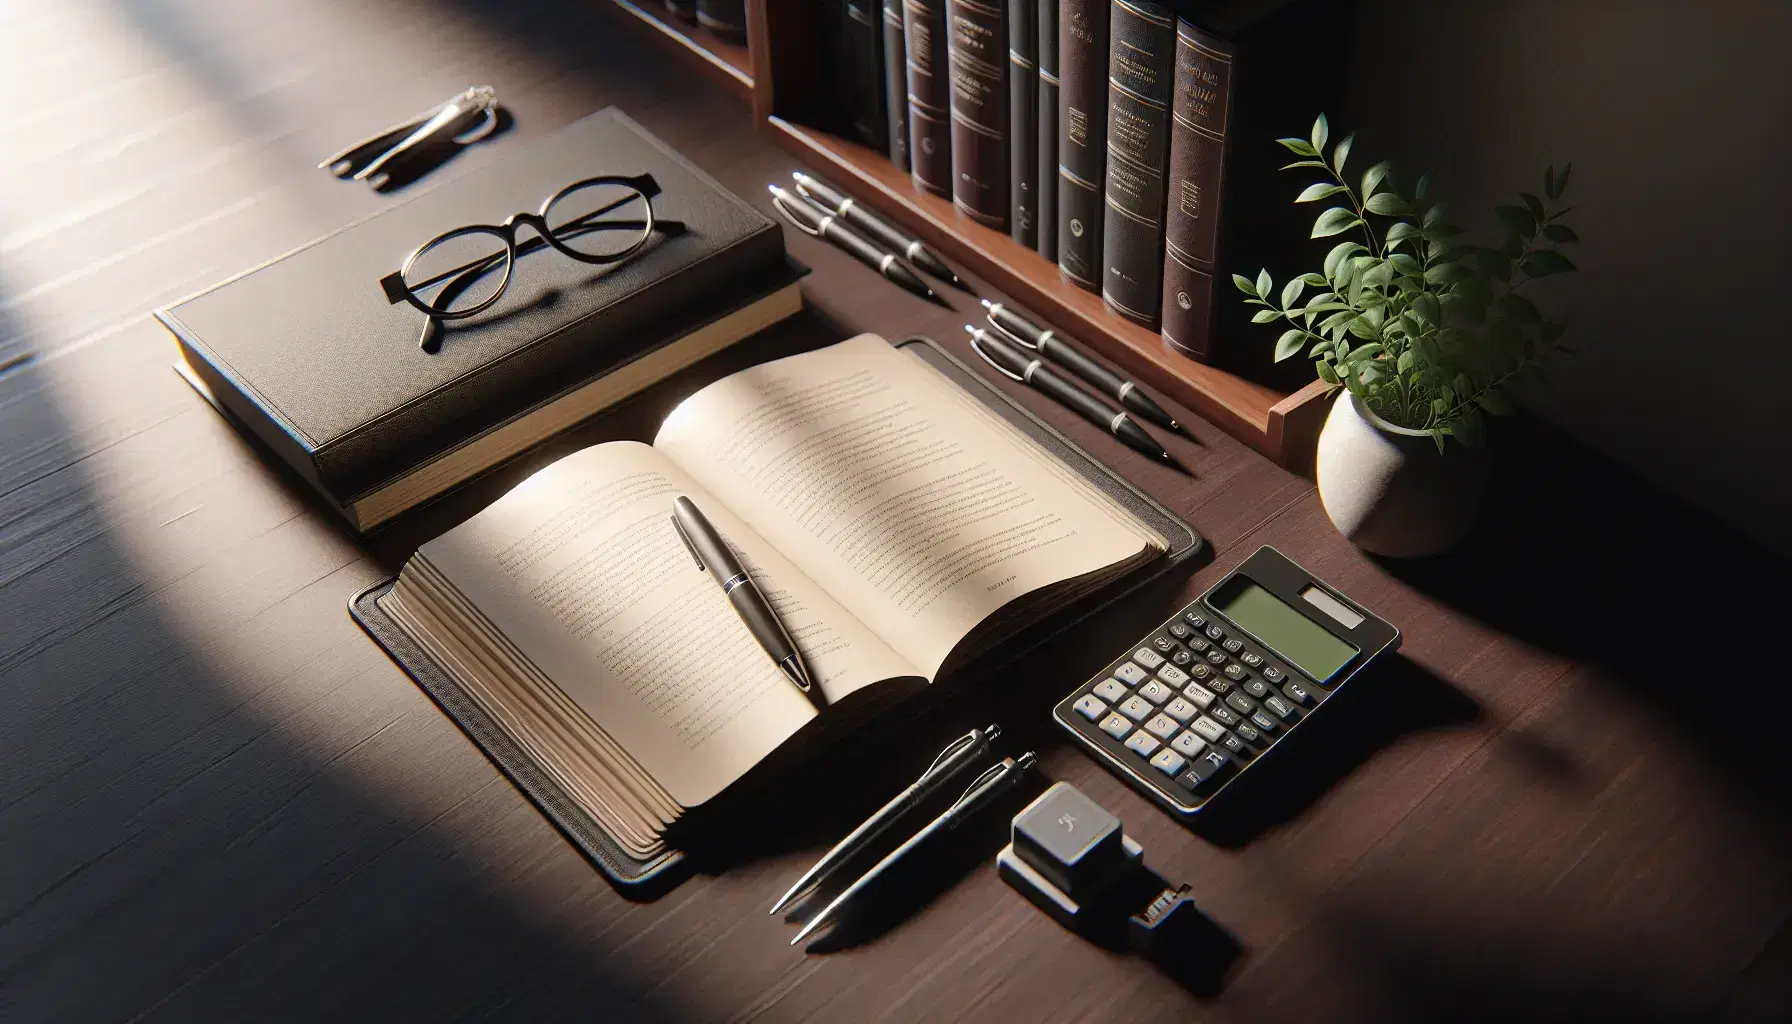 Escritorio de madera con libro abierto, calculadora científica, gafas metálicas y bolígrafos alineados, junto a planta en maceta y estantería con libros al fondo.